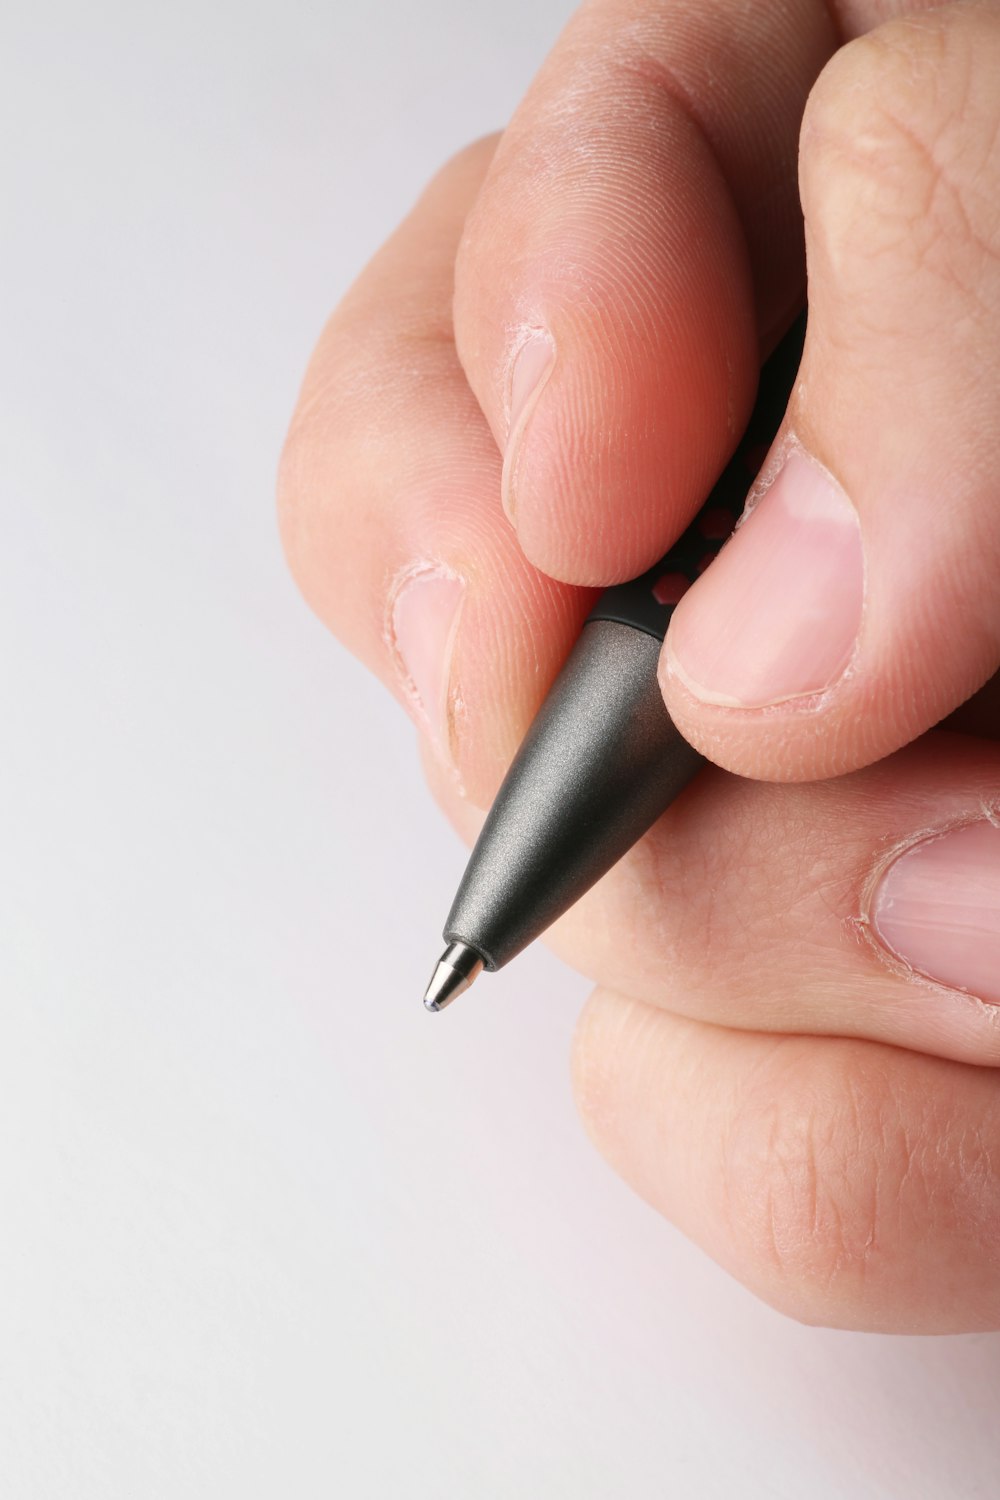 uma pessoa segurando uma caneta na mão esquerda